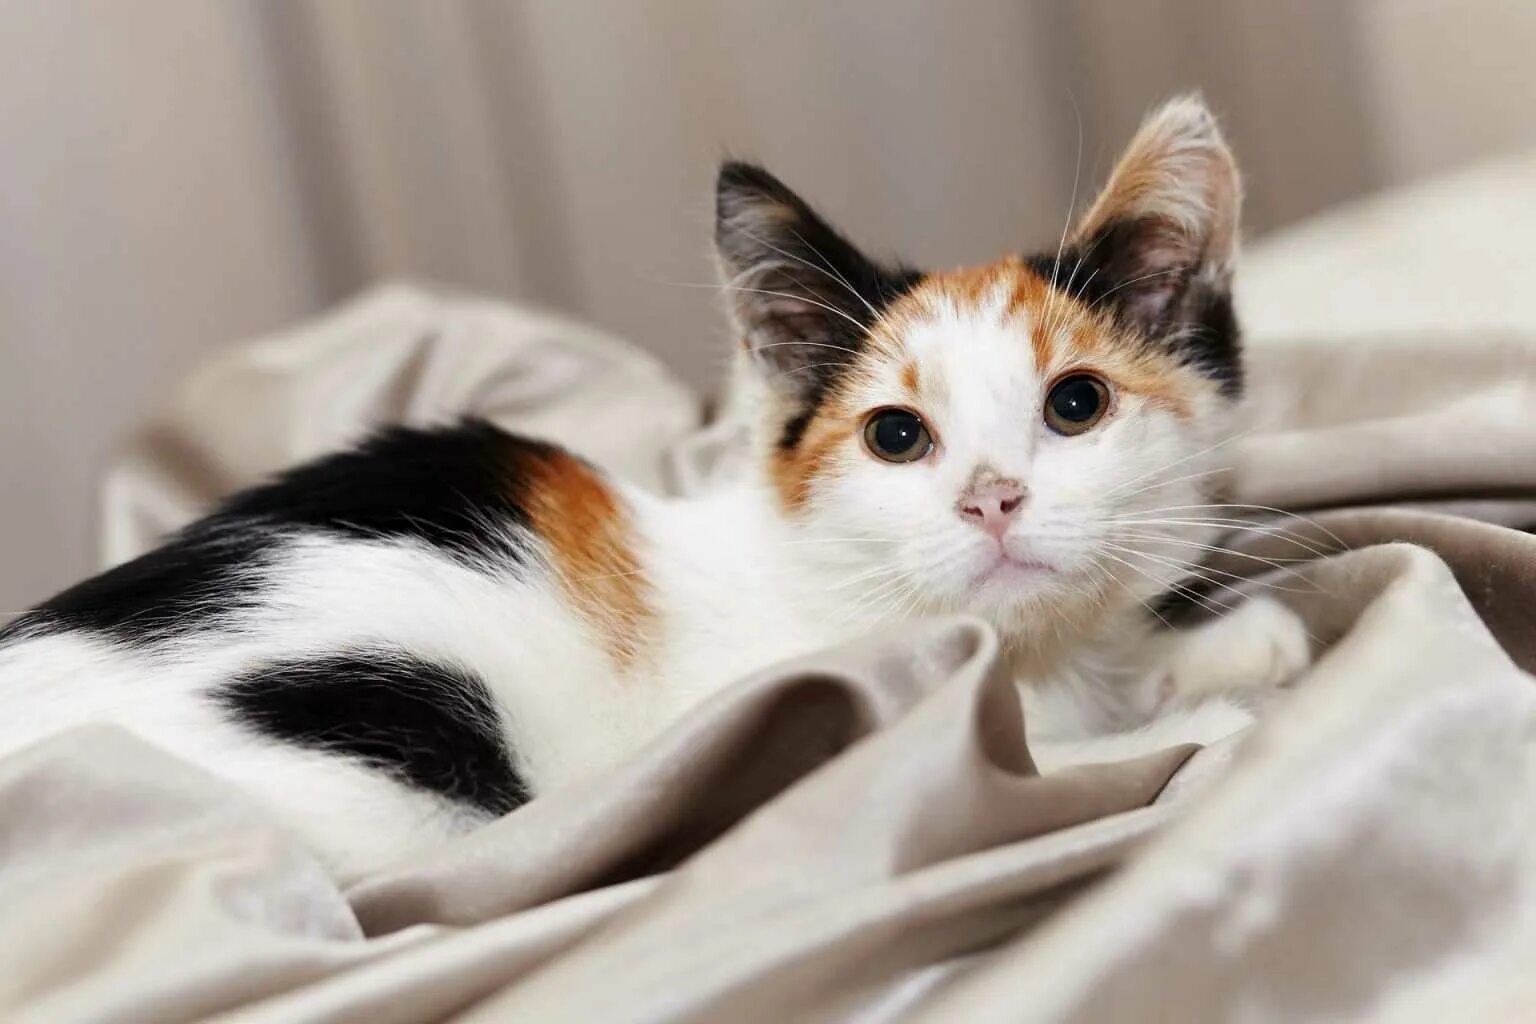 Трехшерстная кошка. Трёхцветная кошка Арлекин. Американская трехшерстная кошка. Беспородные кошки трёхцветные. Кошка черная с рыжими пятнами порода